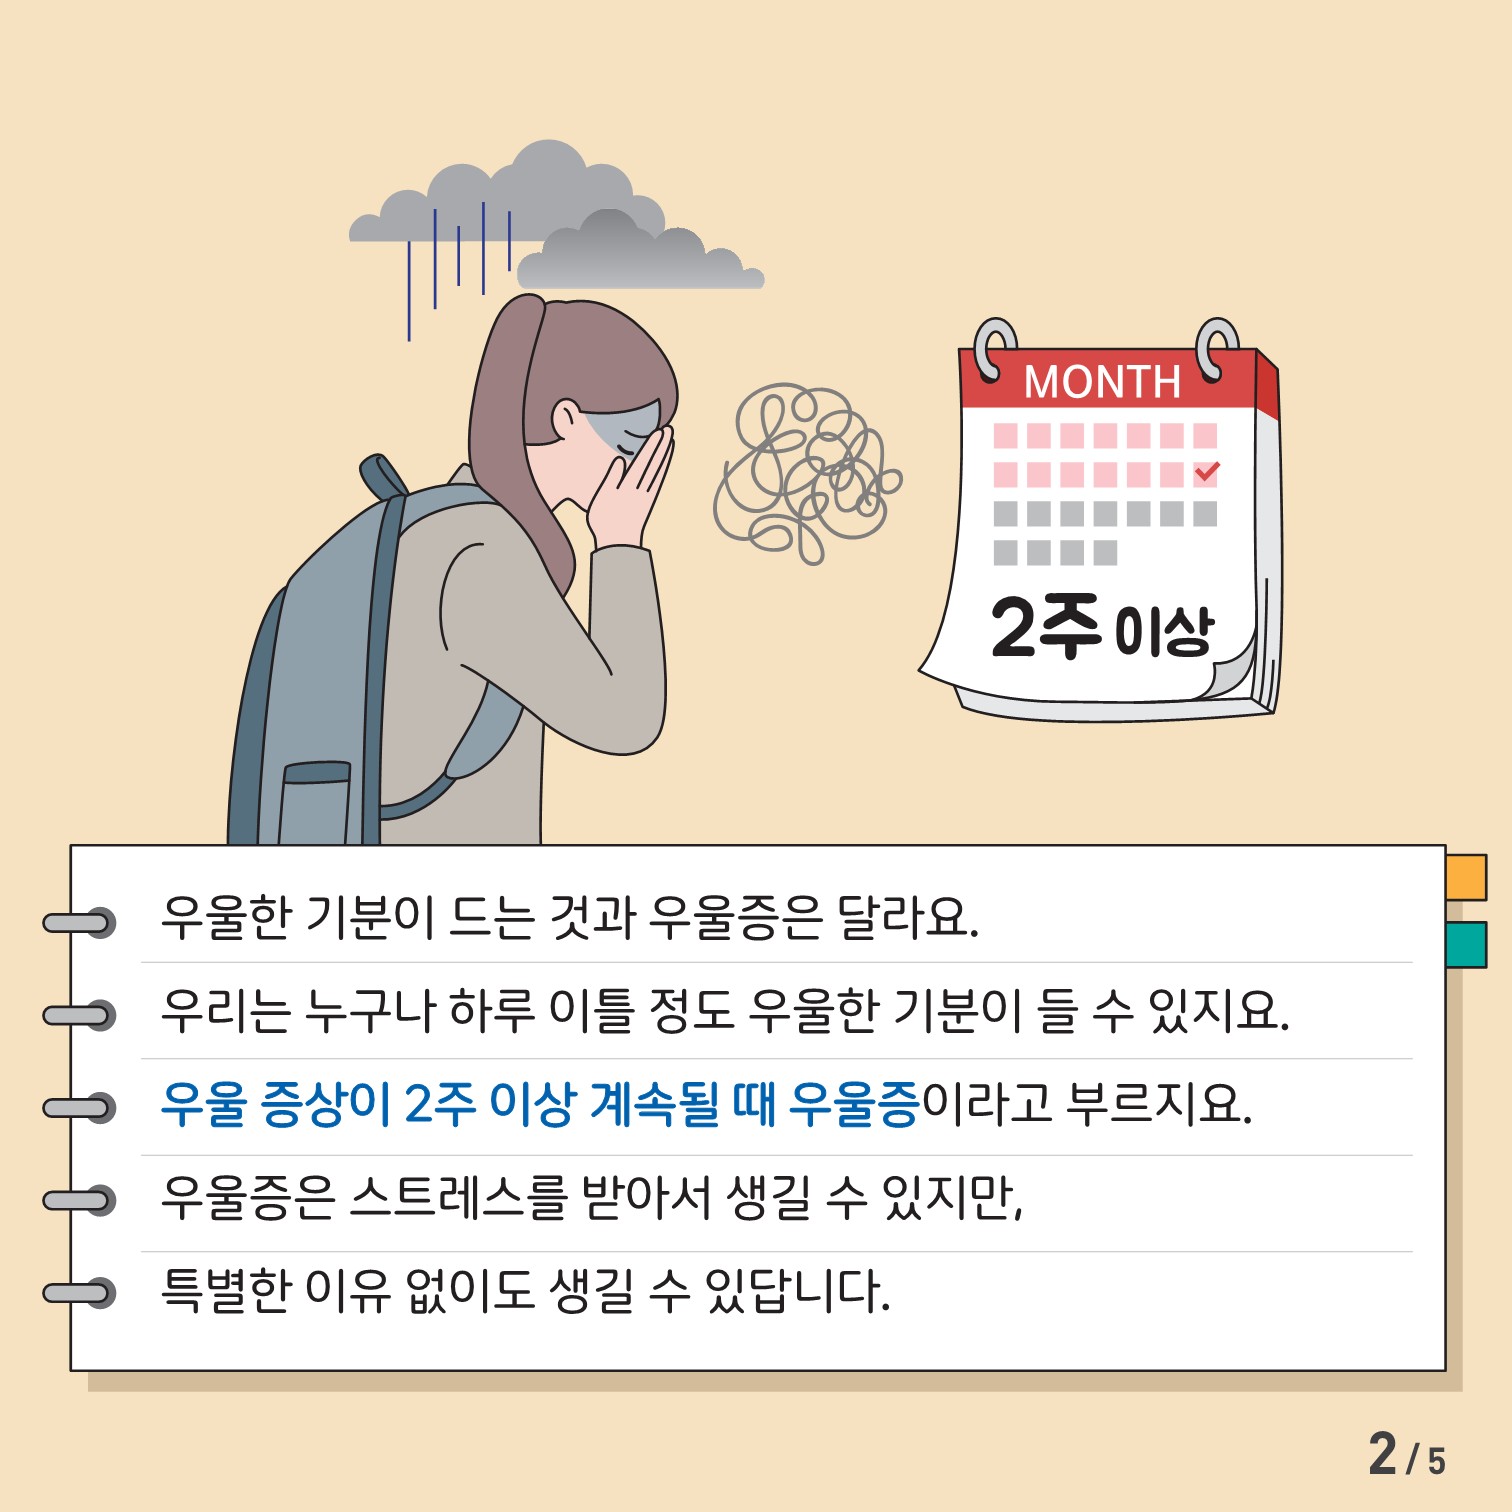 [중고등학생용] 카드뉴스 제 2023-7호(우울증)_2